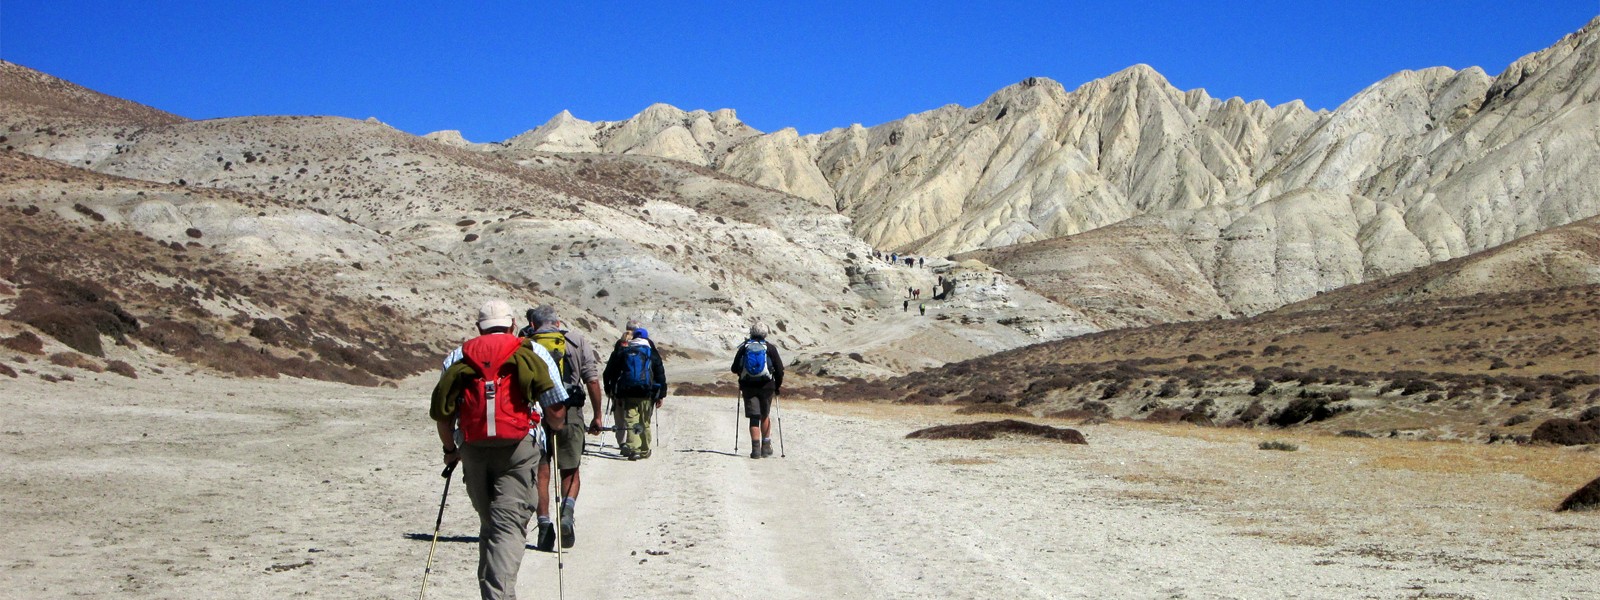 Upper Mustang, Lori Gompa and Muktinath Trekking - Nepal